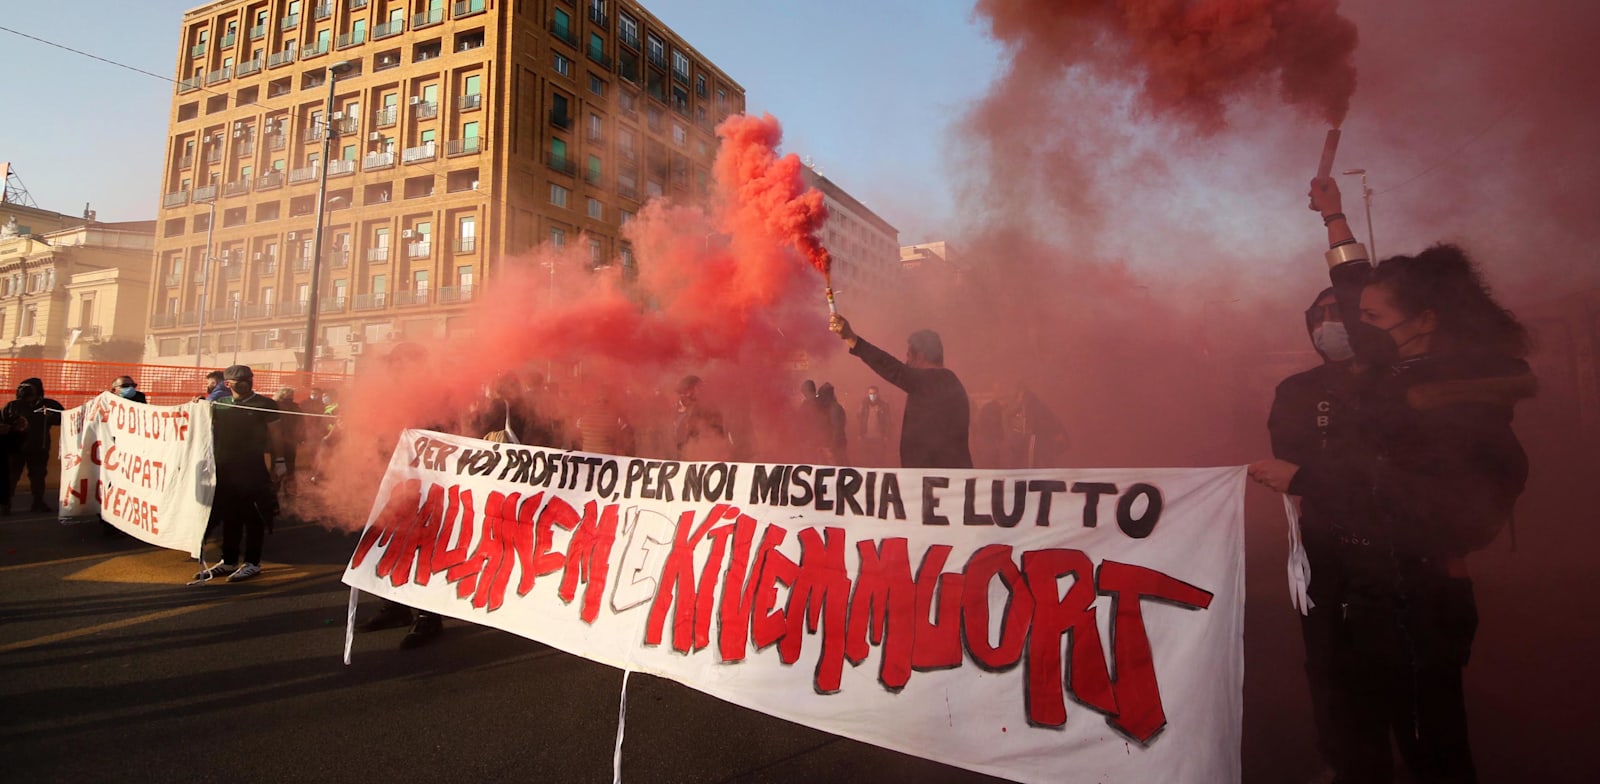 הפגנה נגד פיטורים ברחובות נאפולי איטליה. למרות האבטלה הגבוהה, אופטימיות זהירה / צילום: Reuters, IPA